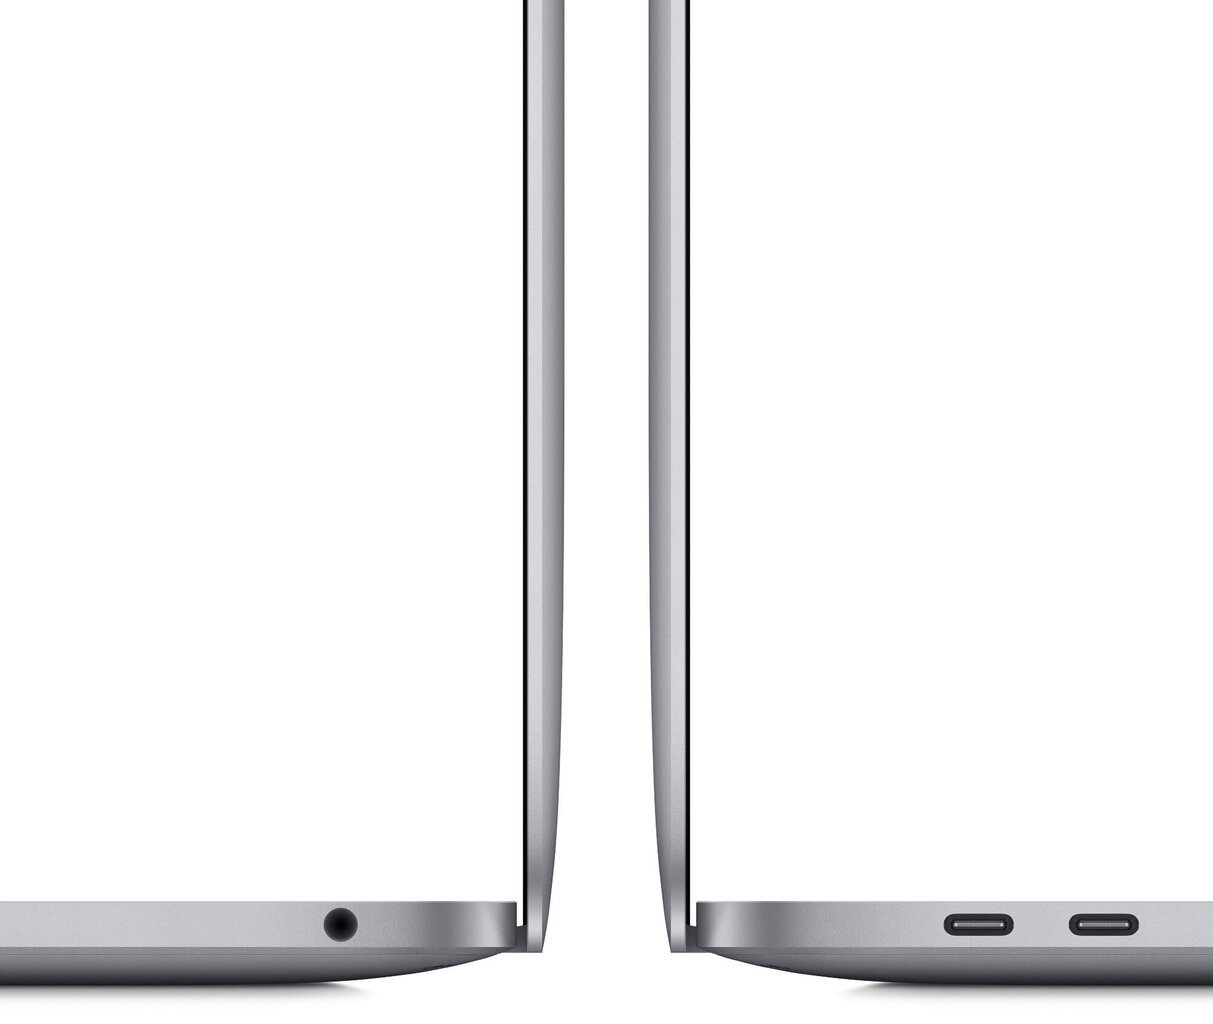 Apple MYD82ZE/A MacBook Pro 13" MYD82, EN цена и информация | Nešiojami kompiuteriai | pigu.lt